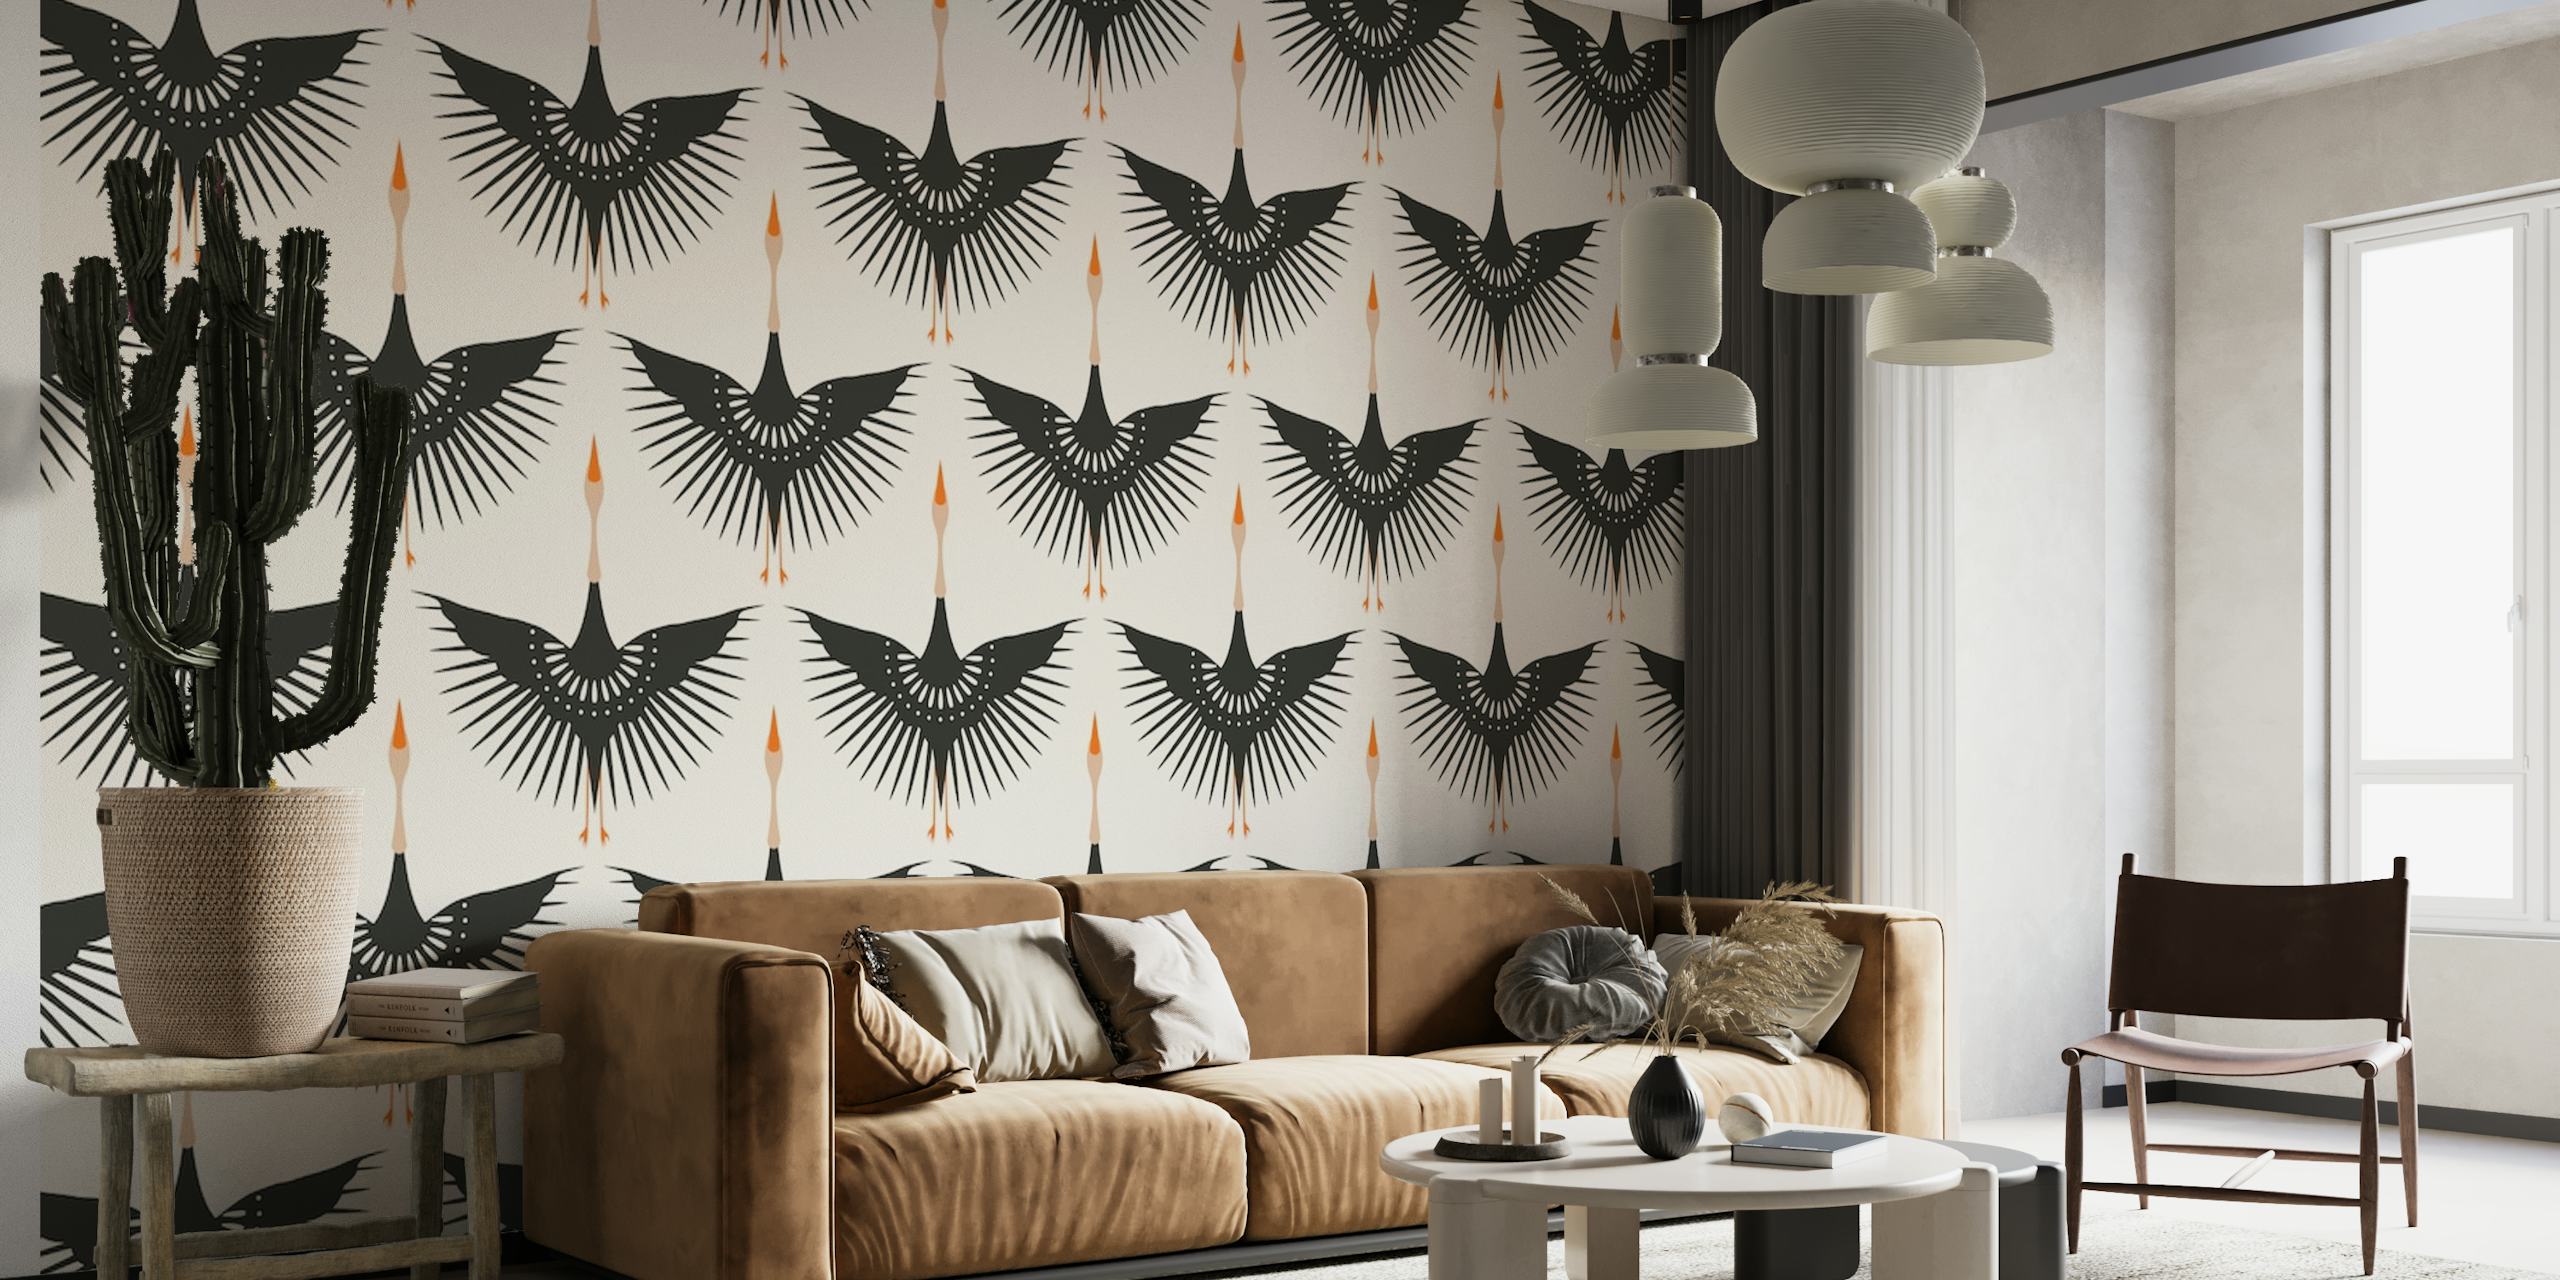 Flying Cranes Art Deco wallpaper